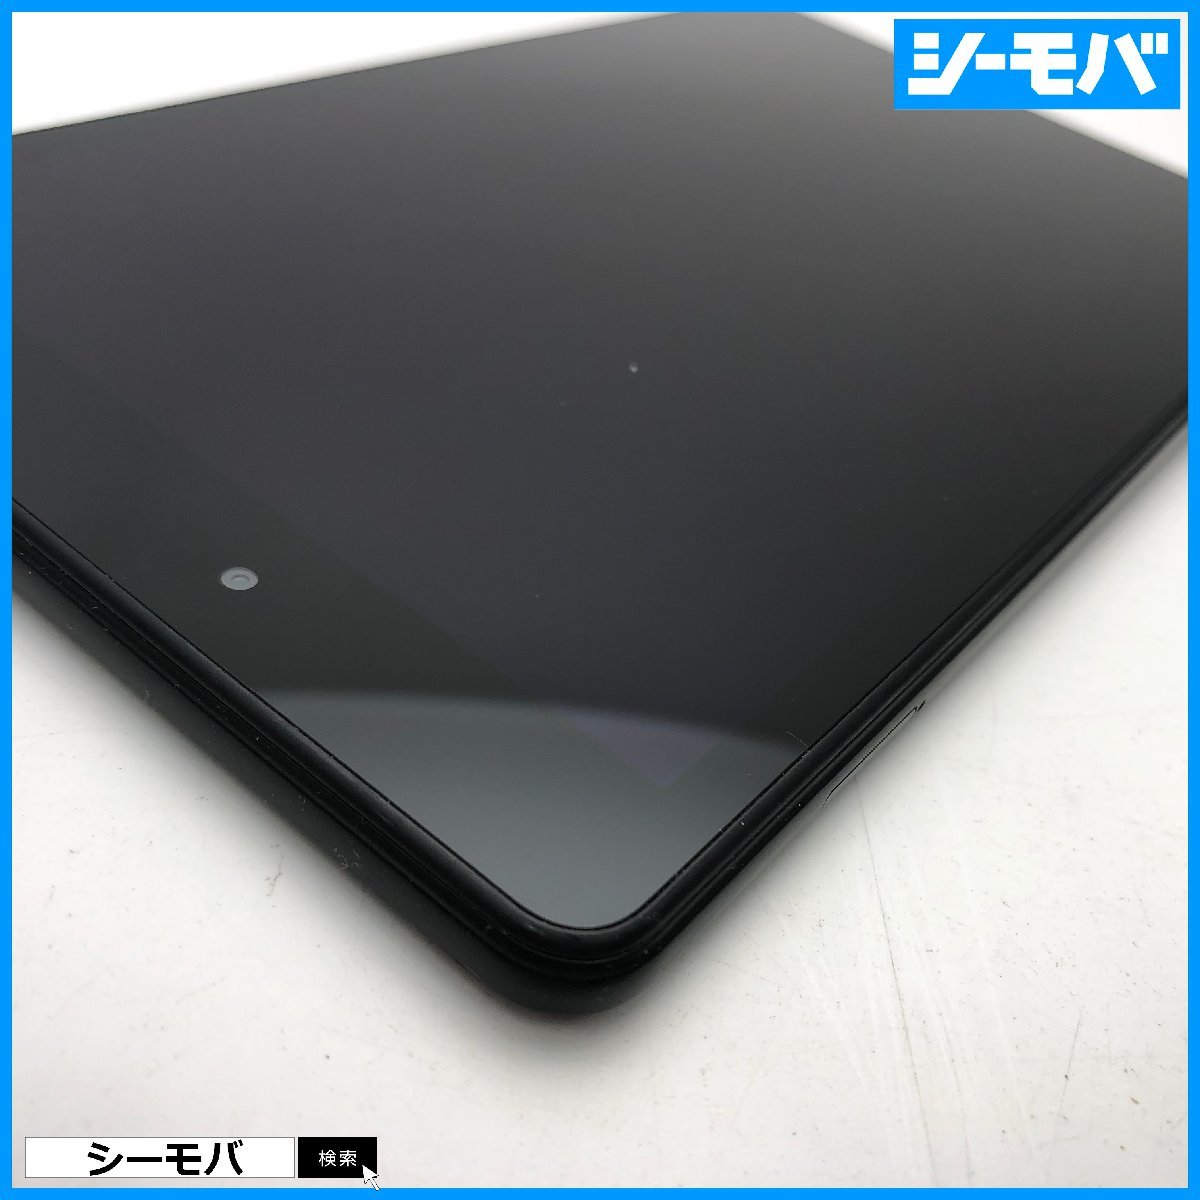 タブレット サムスン Galaxy Tab A 8.0 SM-T290 Wi-Fi 32GB ブラック 中古 8インチ android アンドロイド RUUN13686_画像4